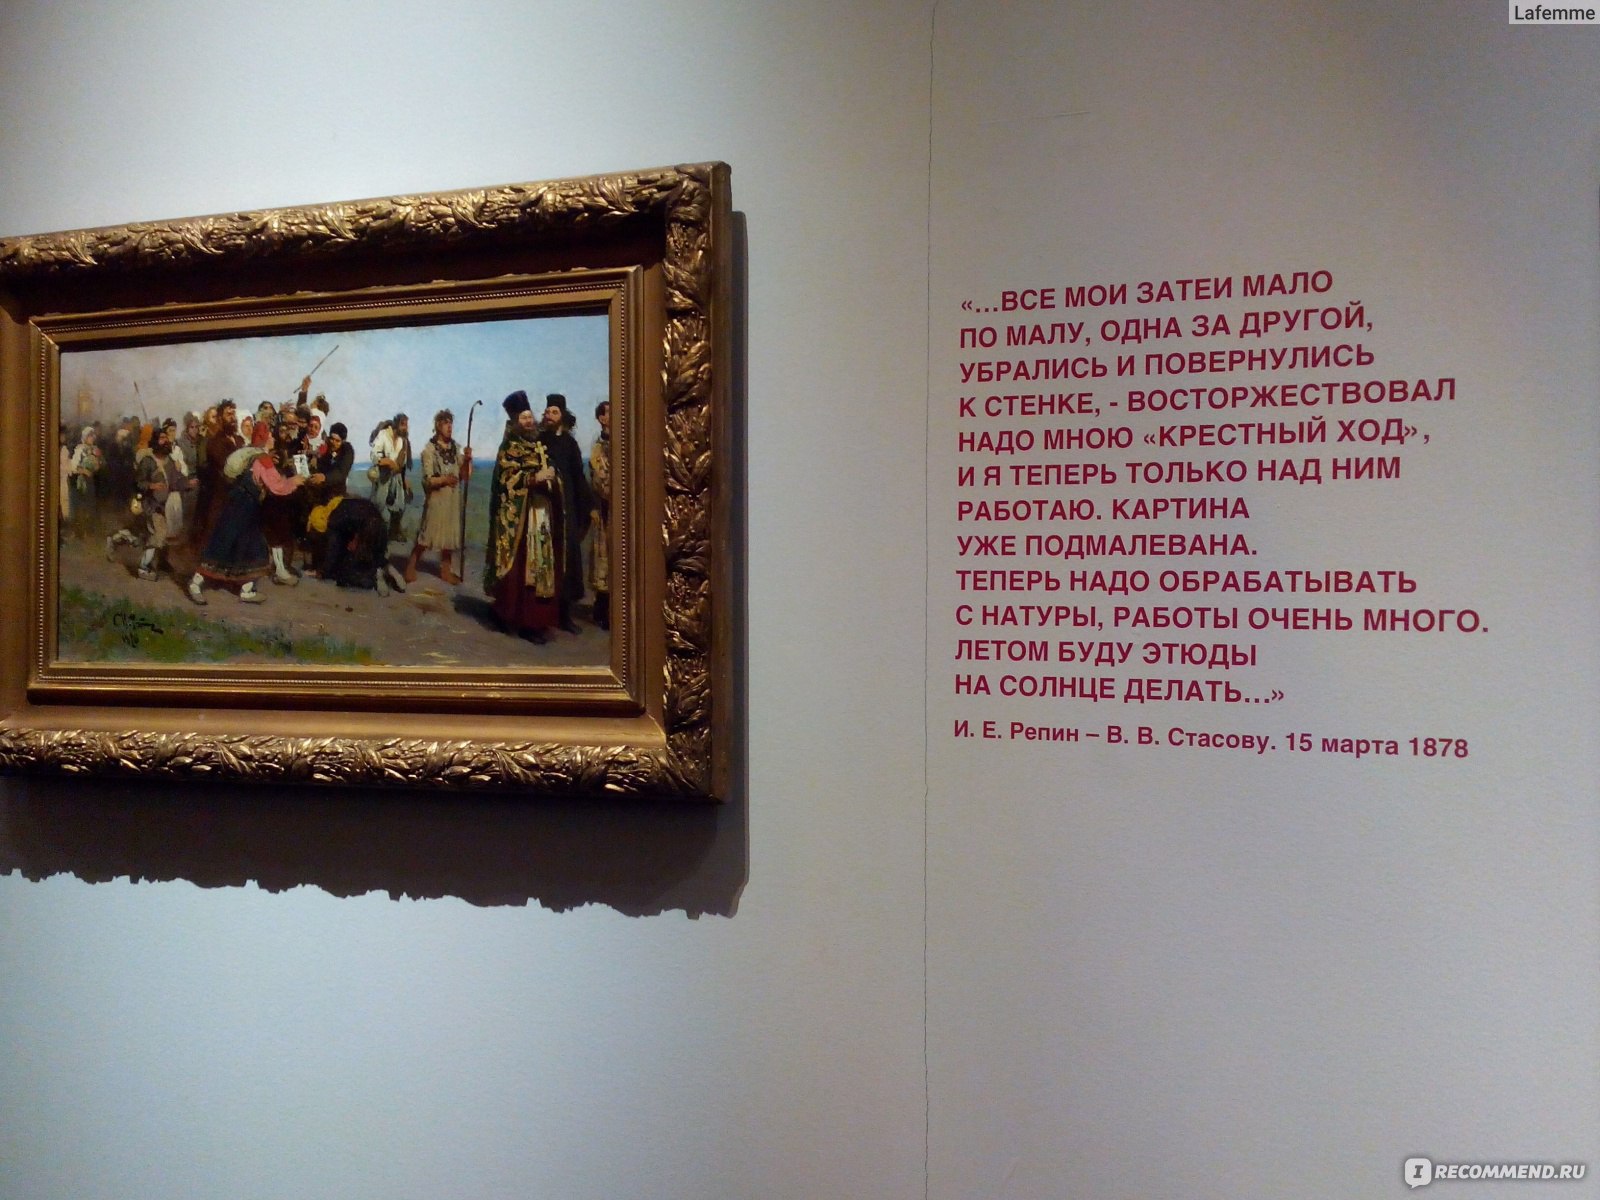 Картины Репина в русском музее в Санкт-Петербурге